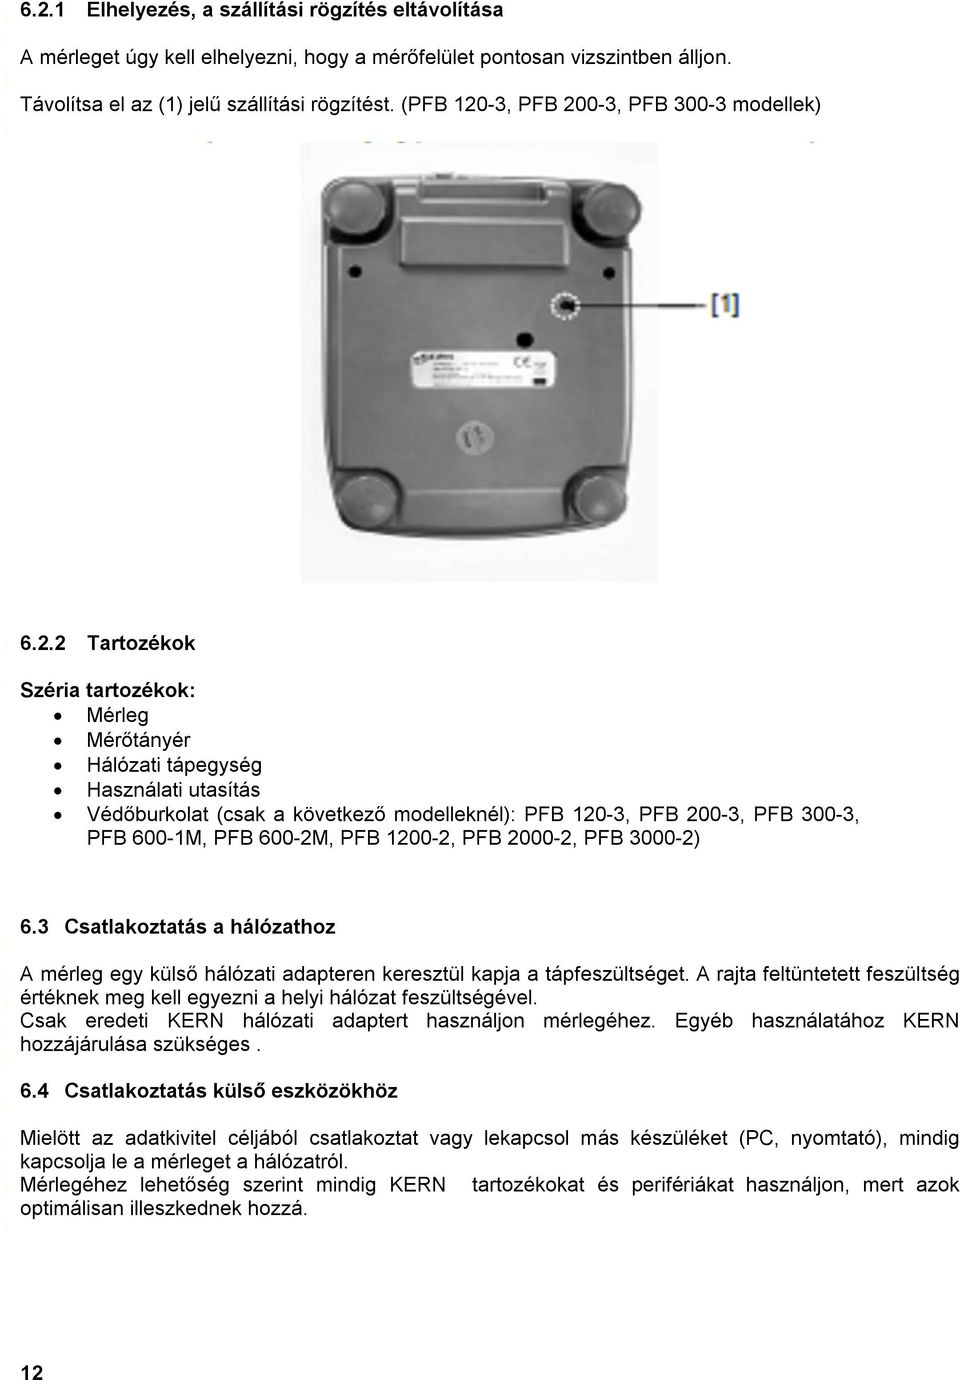 Használati Utasítás Precíziós mérleg HU - PDF Ingyenes letöltés